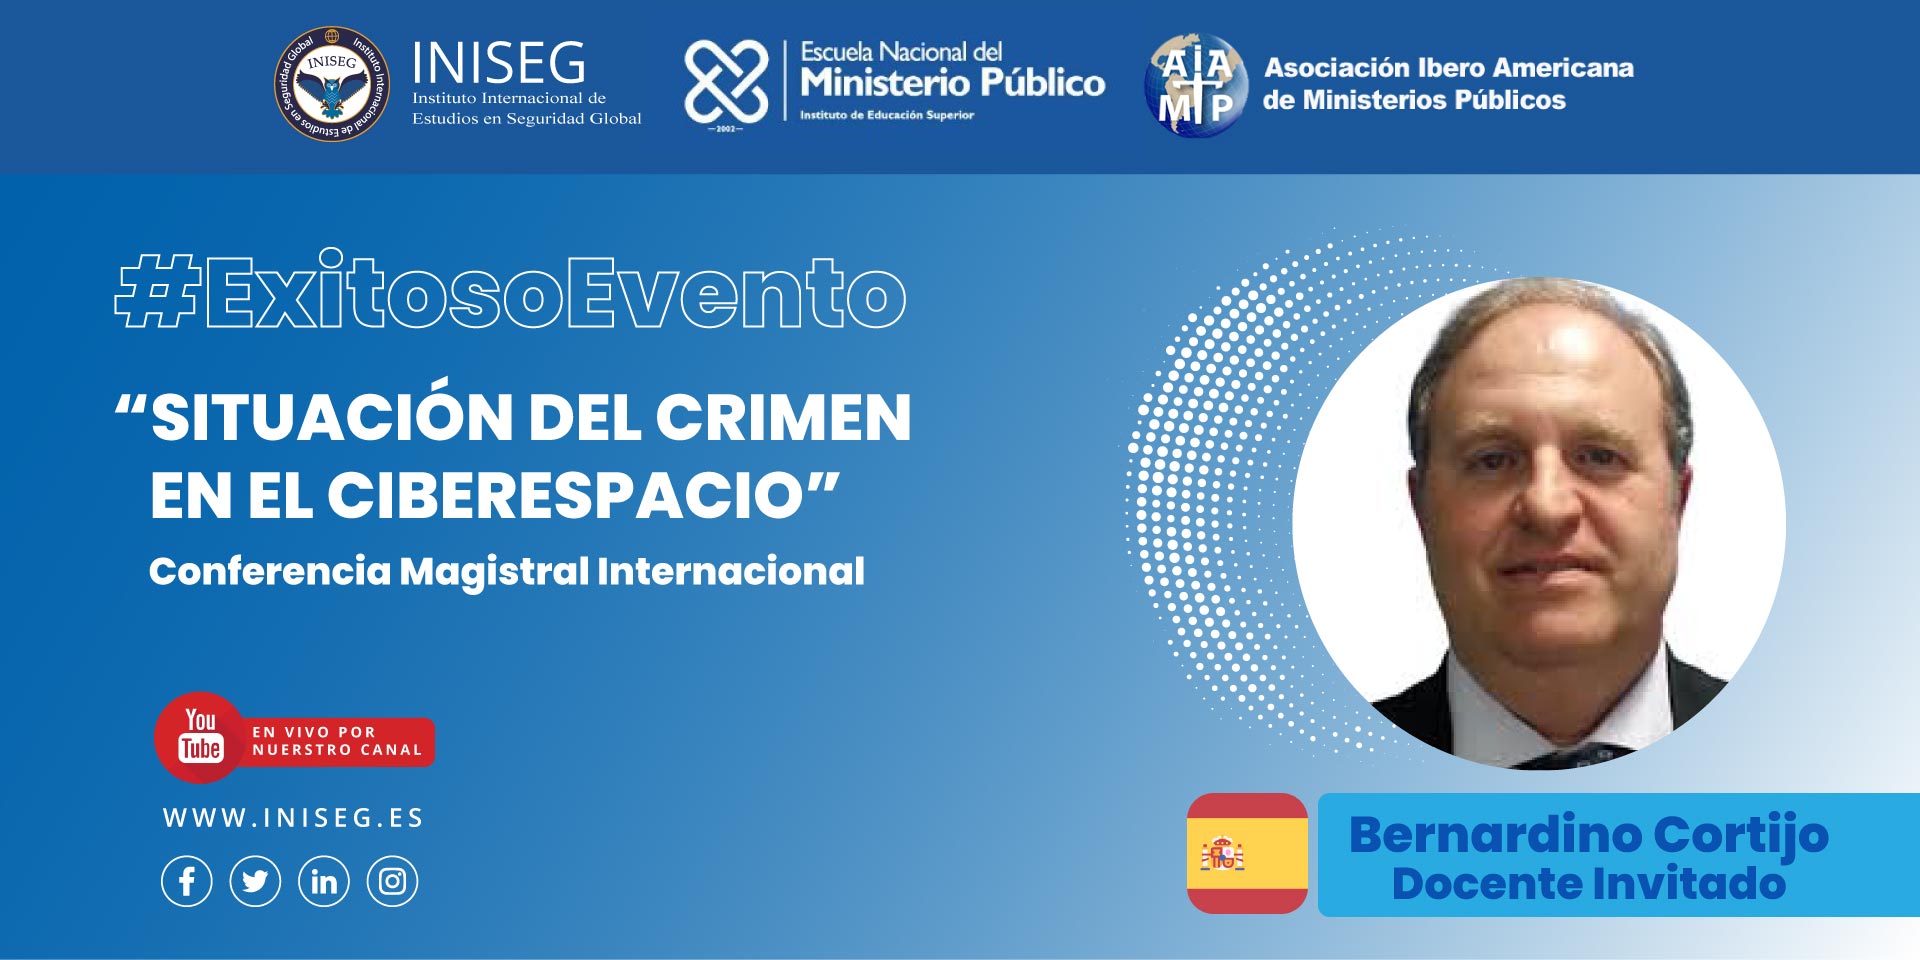 Profesor de INISEG analiza los ciberriesgos en conferencia internacional del Ministerio Público dominicano | Iniseg